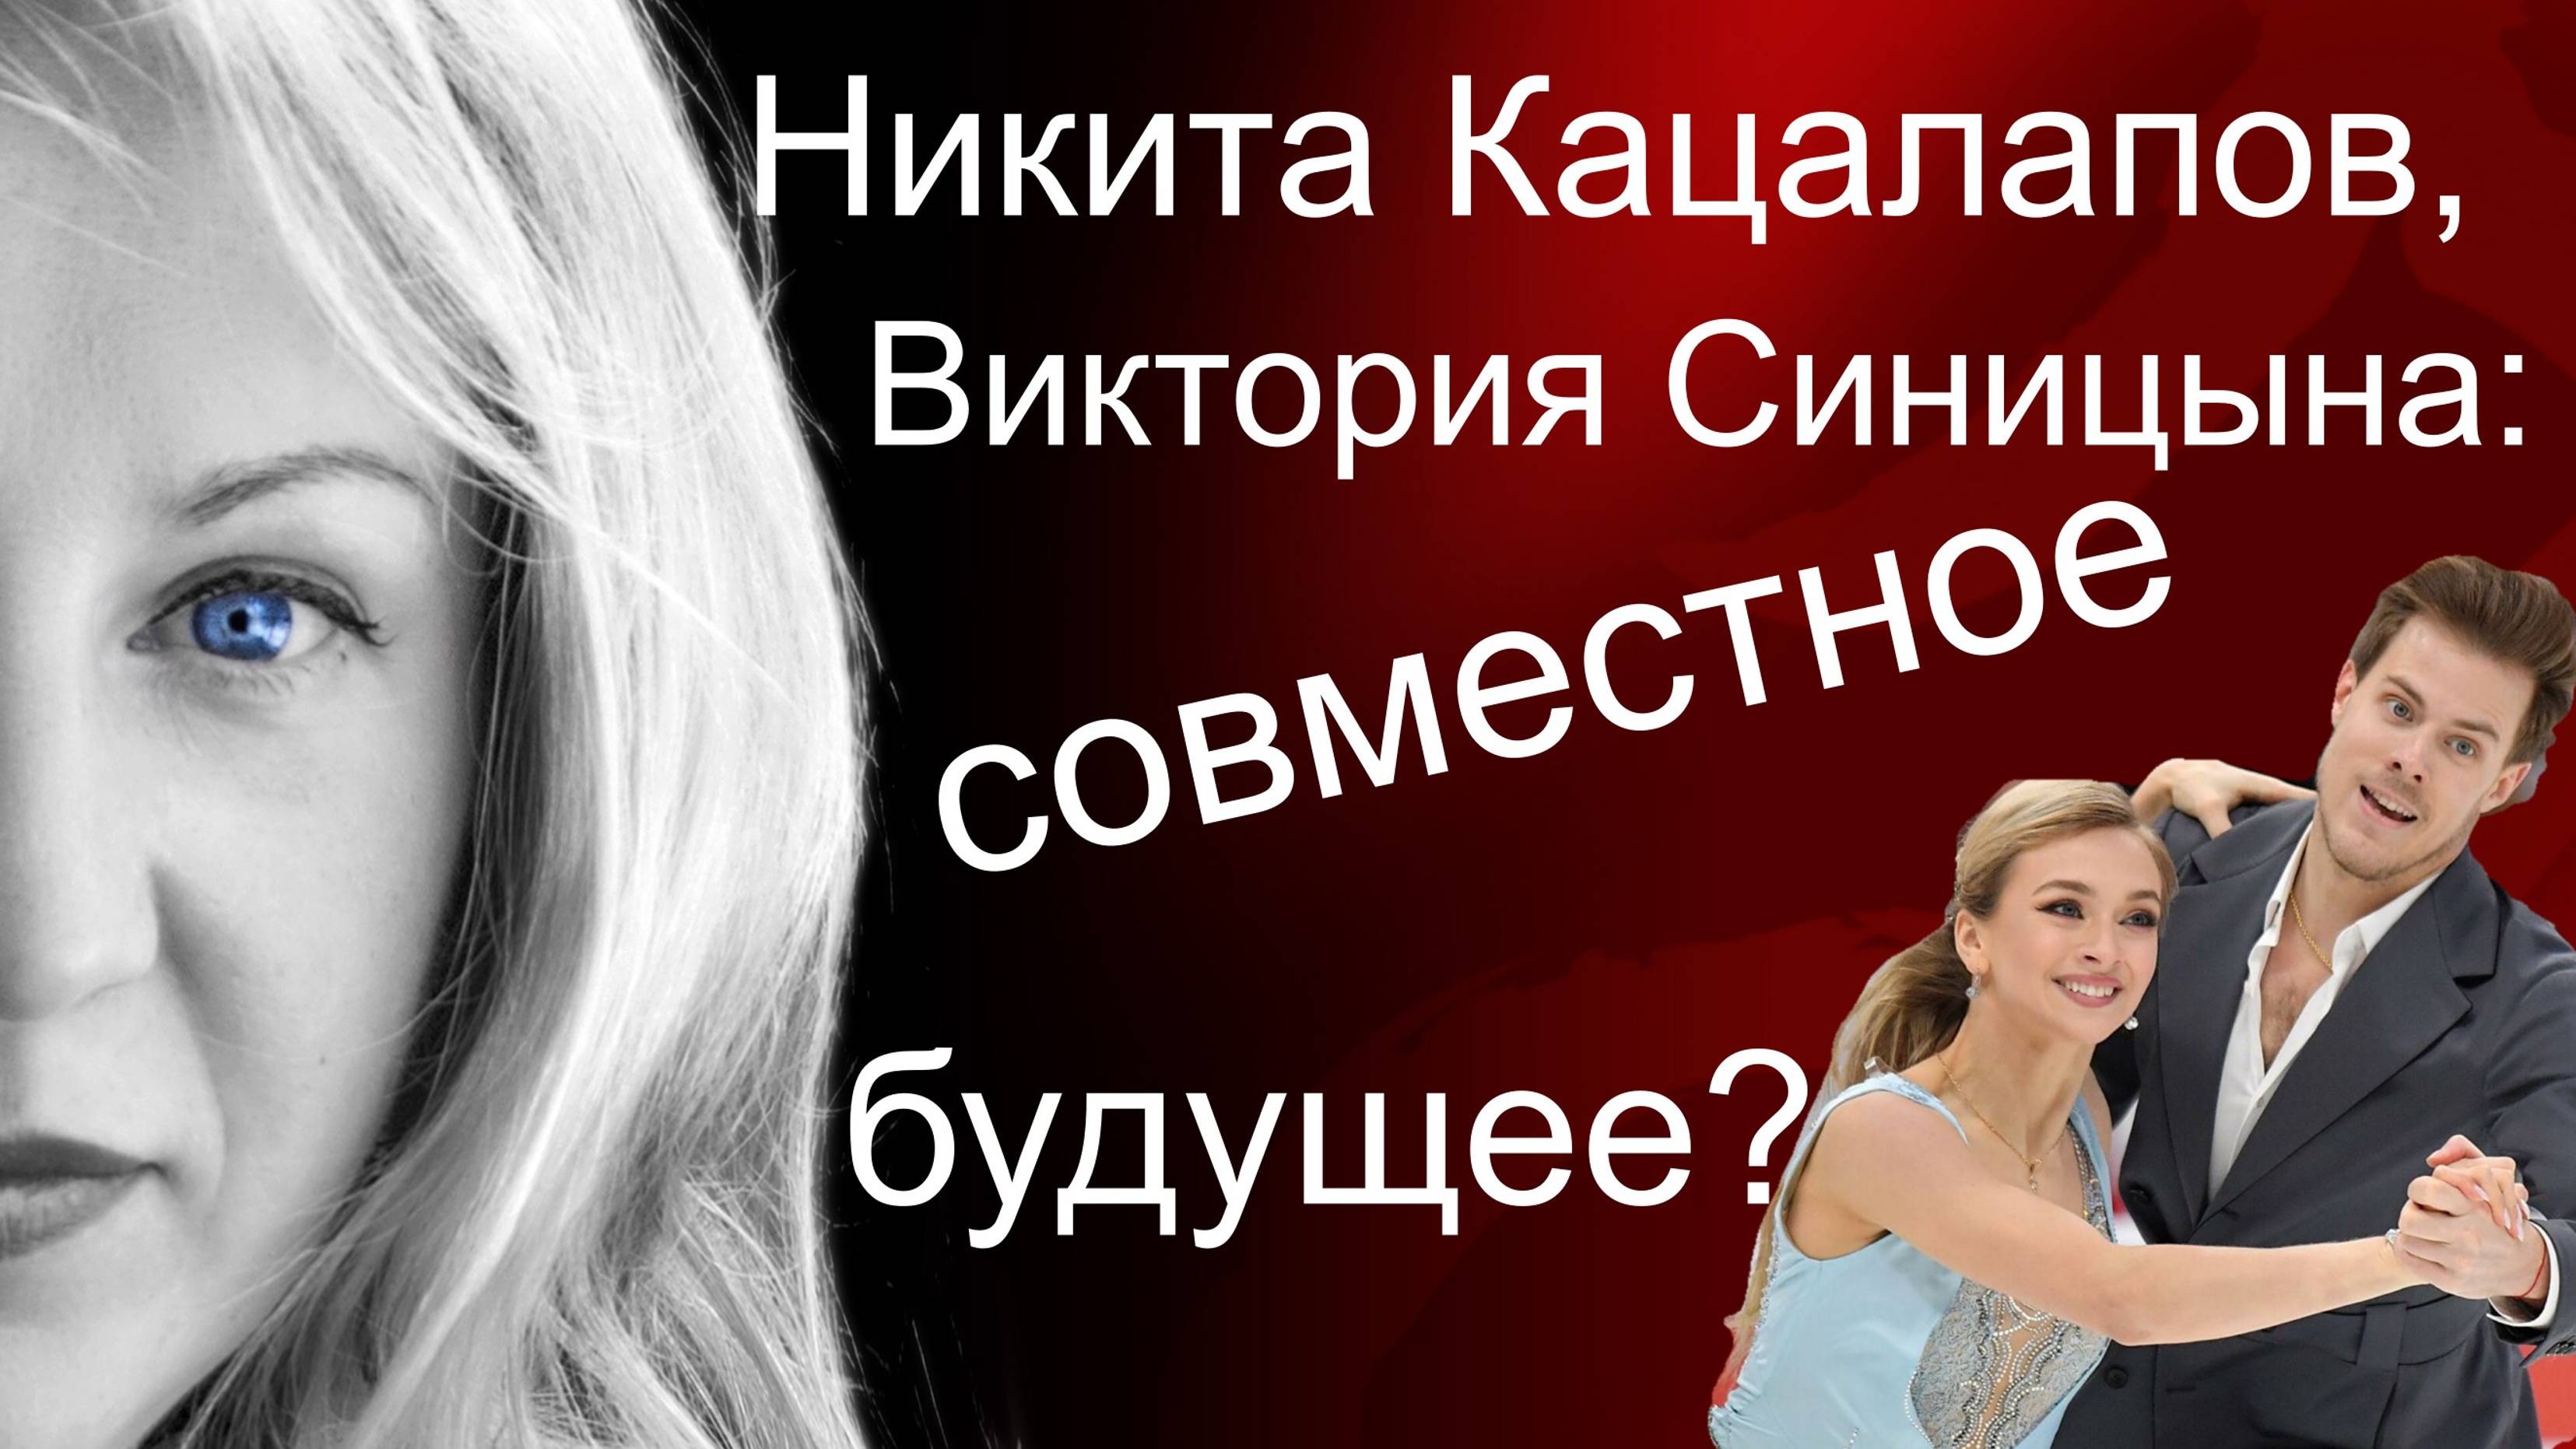 Никита Кацалапов + Виктория Синицына = любовь?